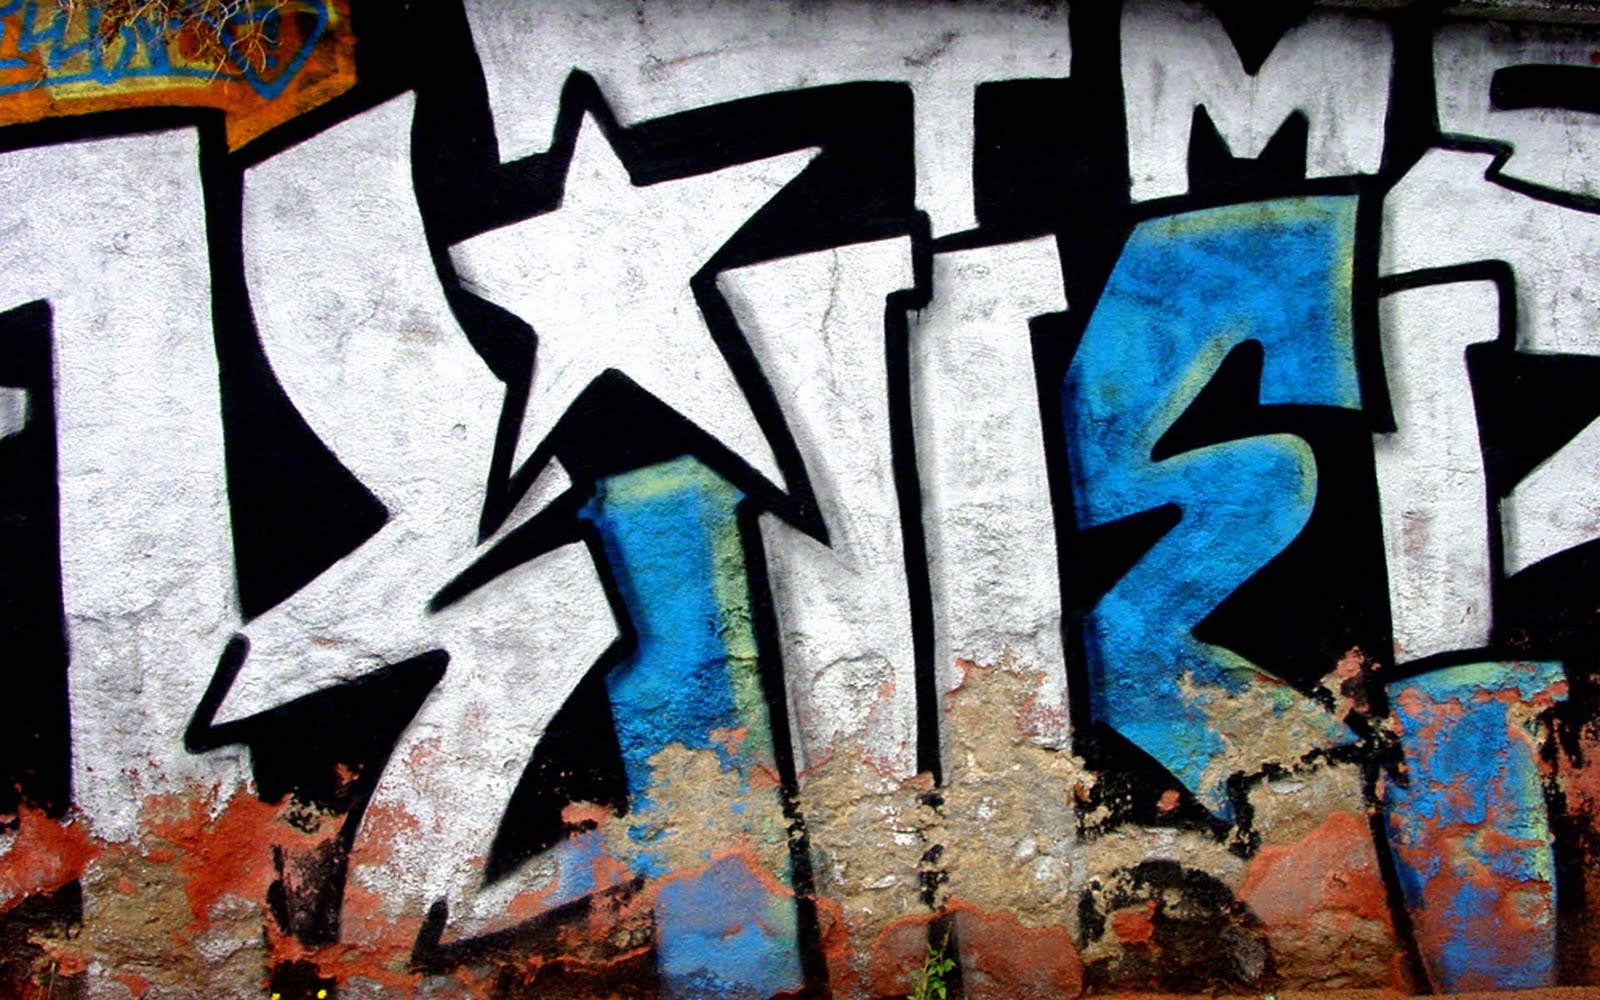 Graffiti Graffiti